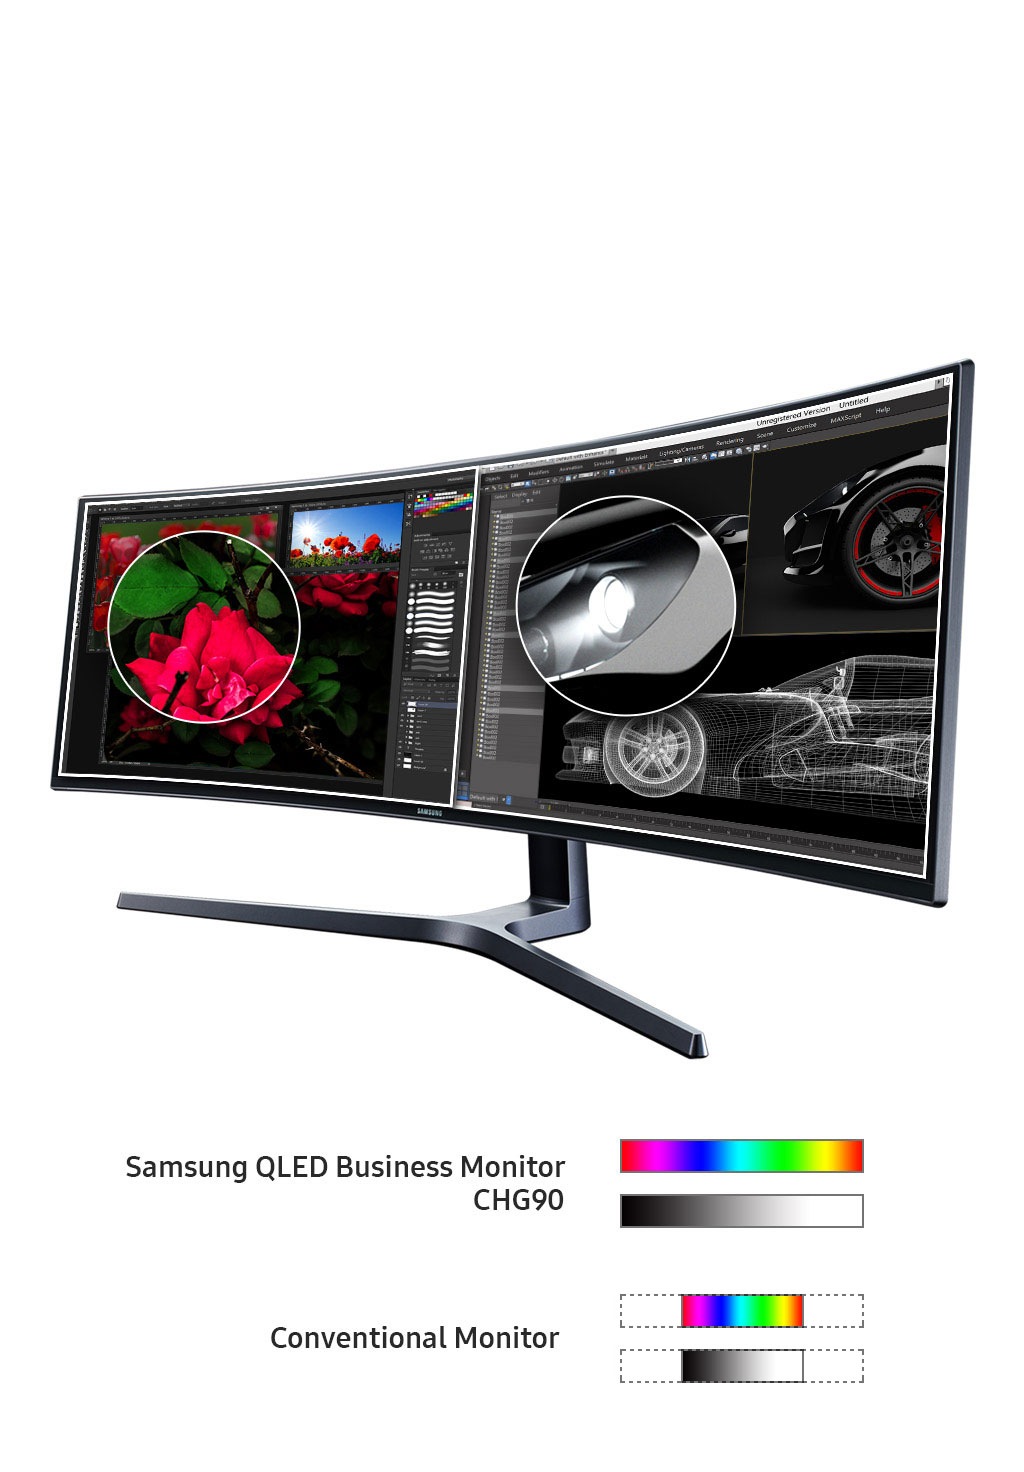 49 CHG90 QLED Gaming Monitor Monitors - LC49HG90DMNXZA